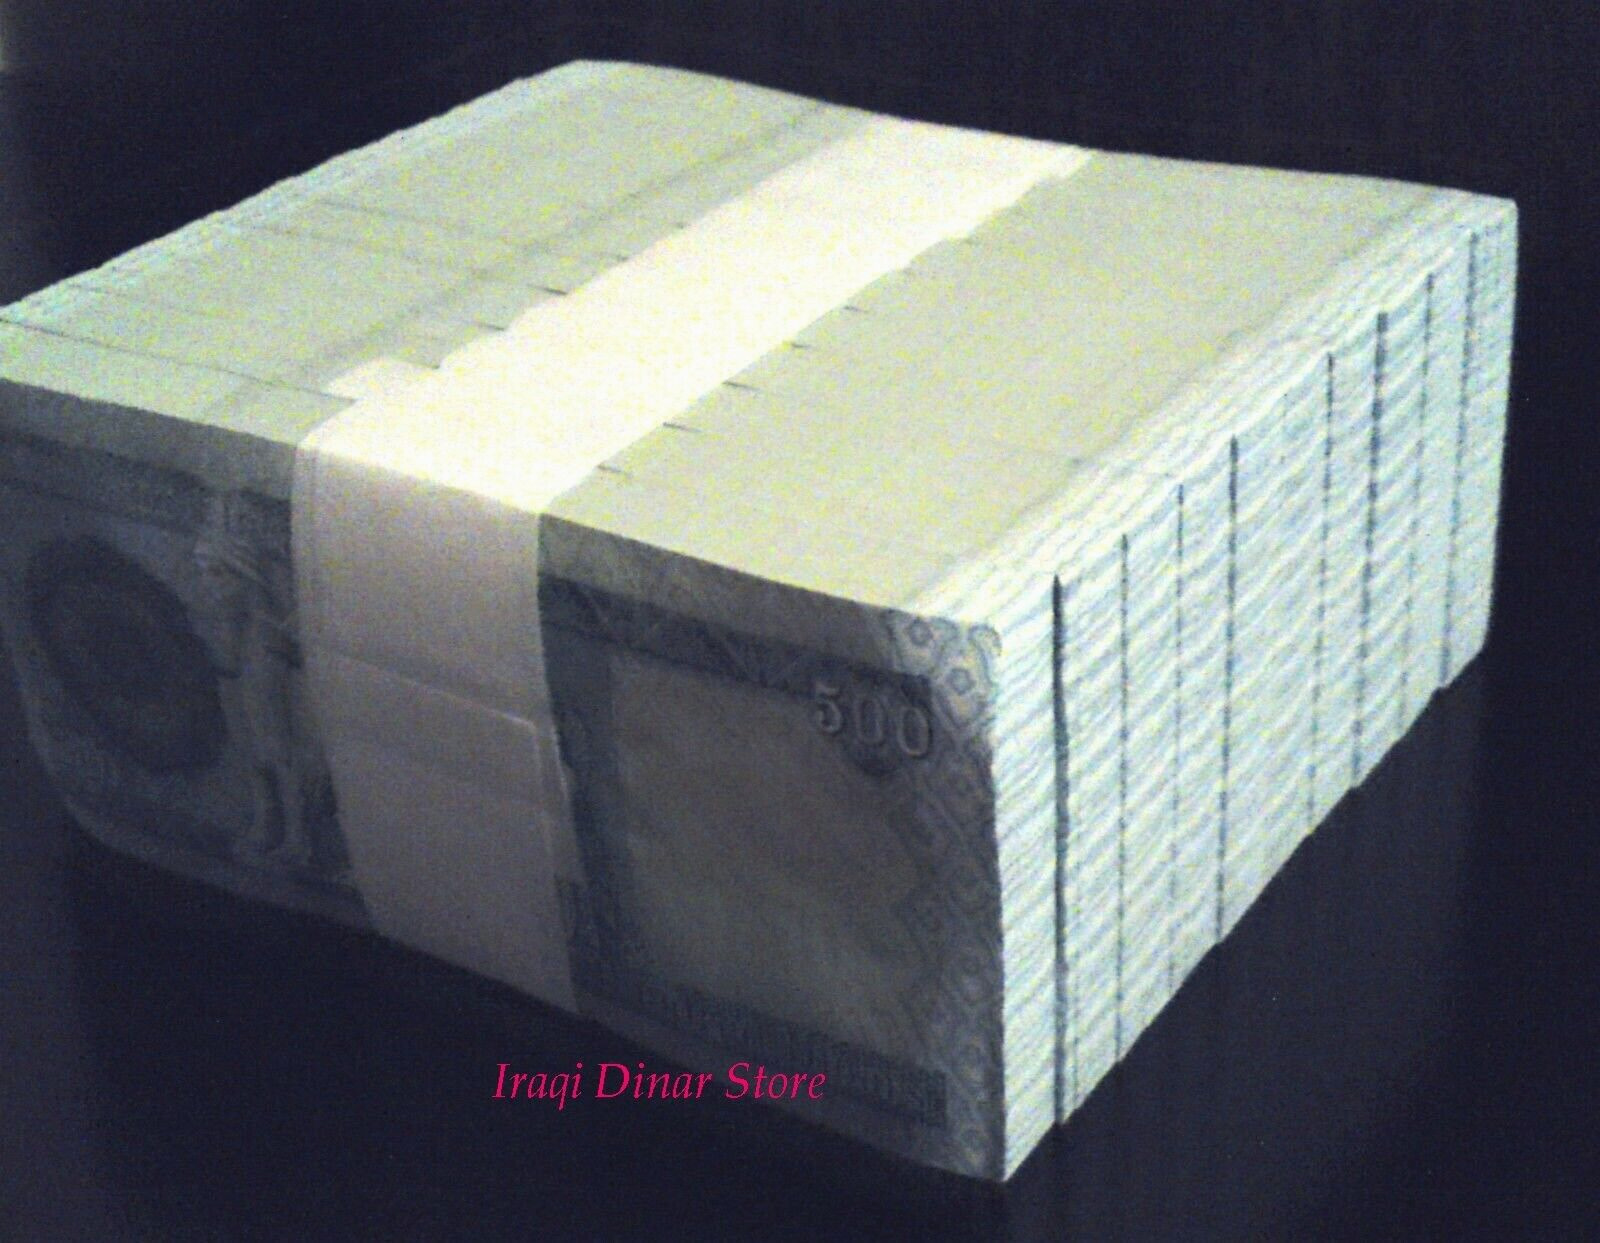 10, 000 Iraq Iraqi Dinar - 20 X 500 Dinar Notes  Limit Of 2 Sets  10, 000 Total